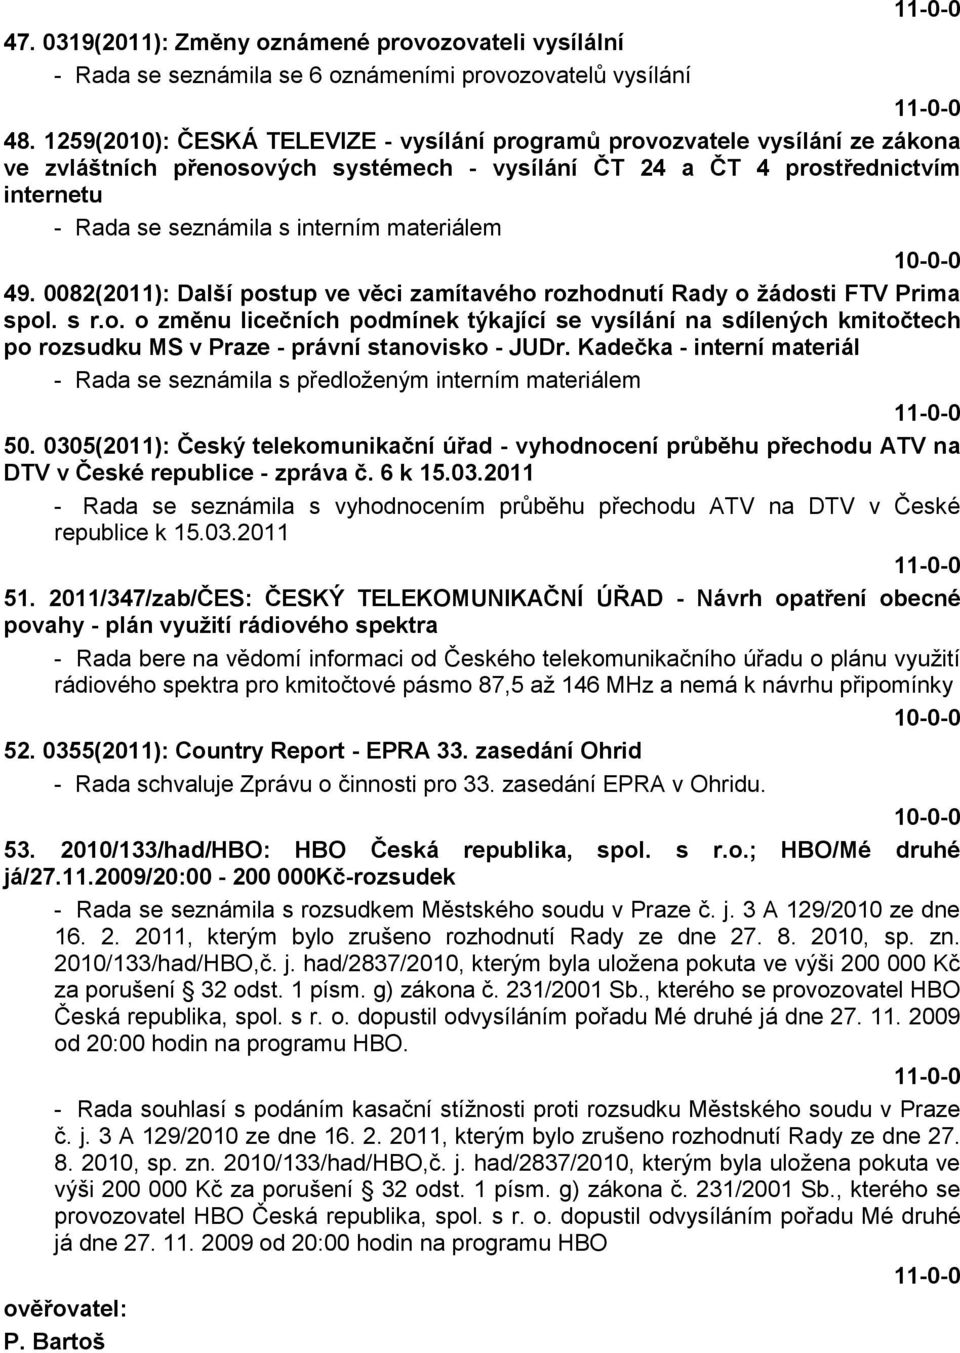 materiálem 49. 0082(2011): Další postup ve věci zamítavého rozhodnutí Rady o ţádosti FTV Prima spol. s r.o. o změnu licečních podmínek týkající se vysílání na sdílených kmitočtech po rozsudku MS v Praze - právní stanovisko - JUDr.